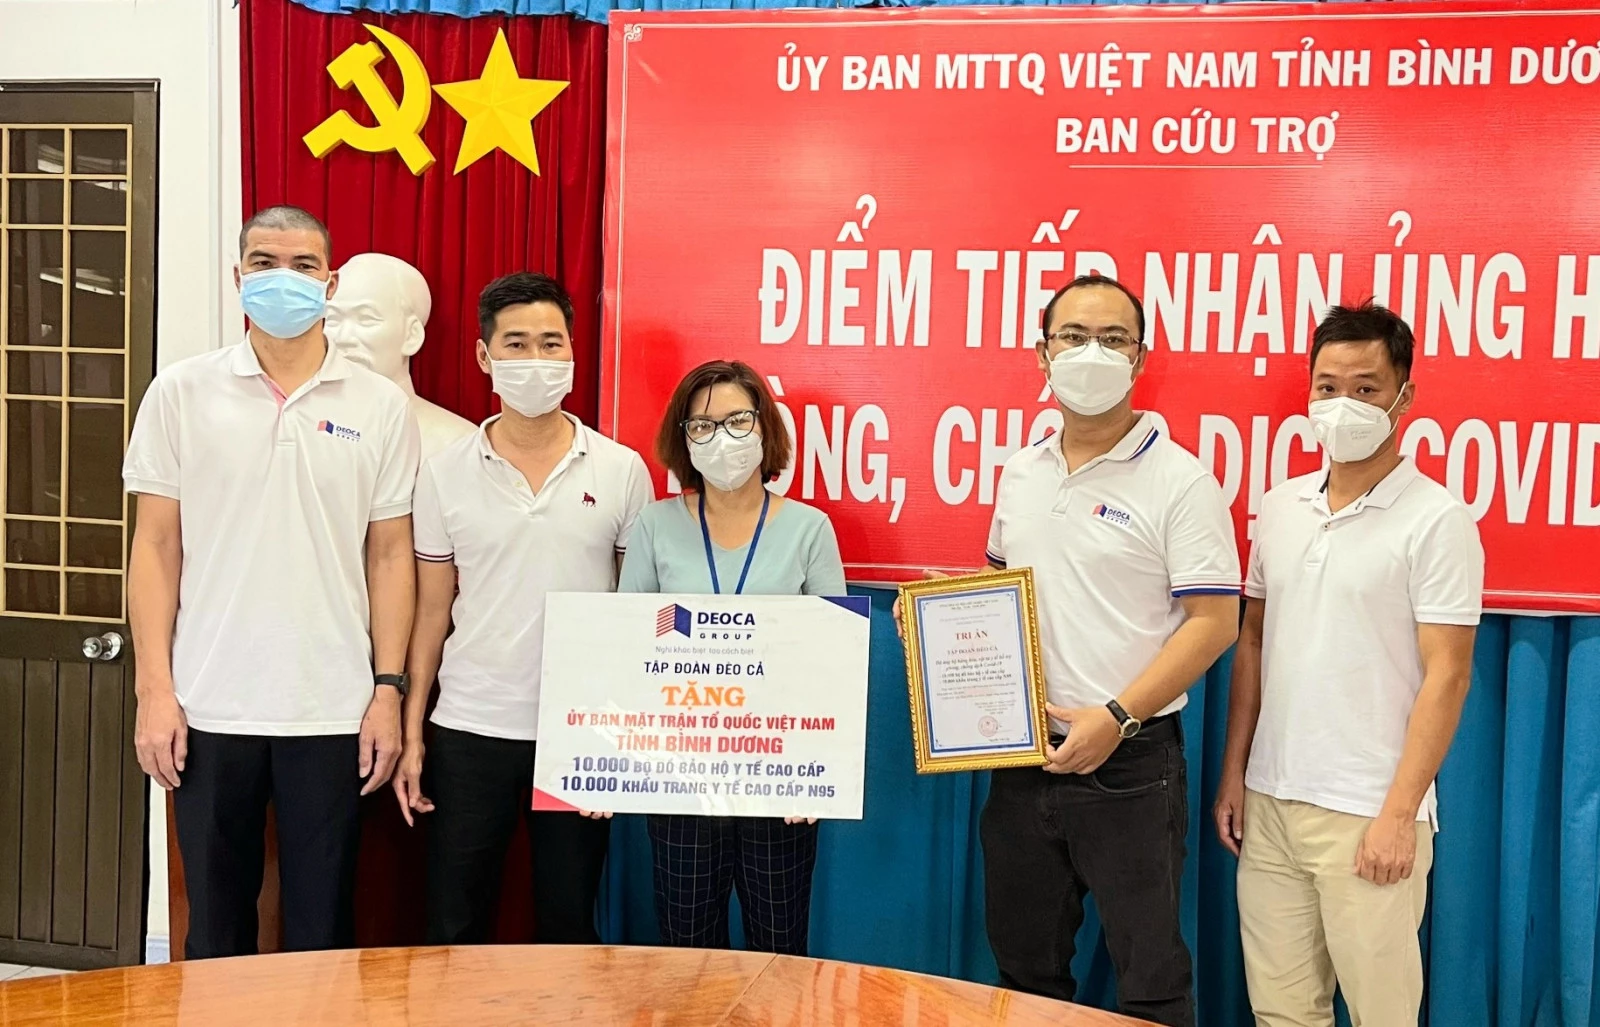 Đại diện Tập đoàn Đèo Cả trao tặng vật tư y tế cho Ủy ban MTTQ Việt Nam tỉnh Bình Dương để phục vụ công tác phòng chống dịch COVID-19.